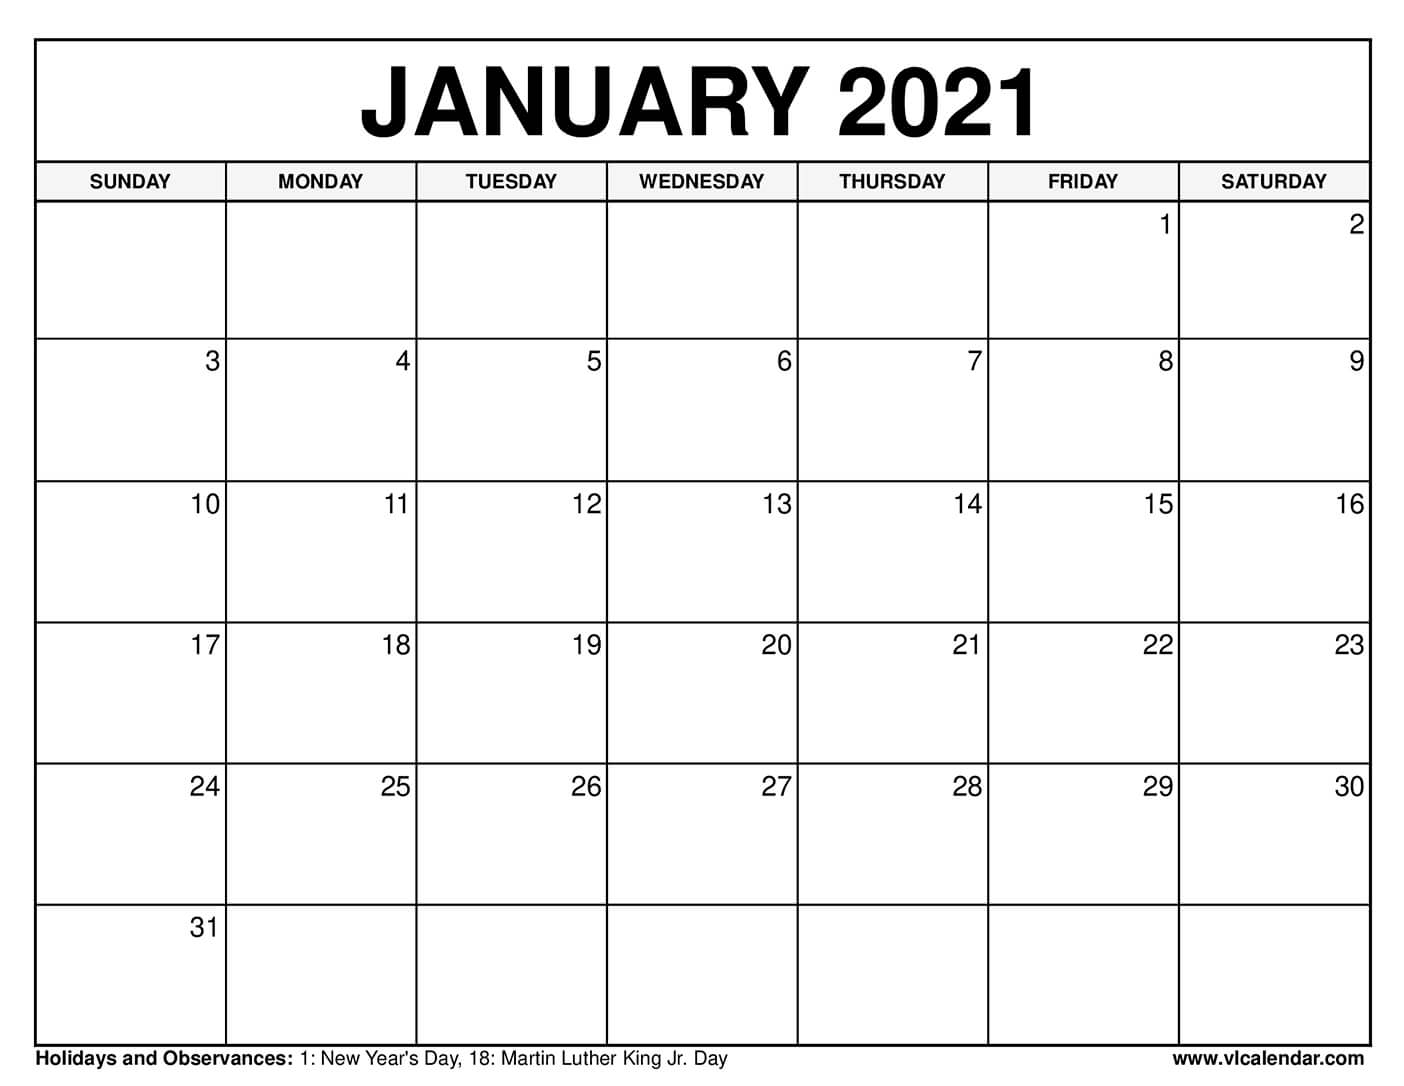 20 de janeiro de 2021 é um feriado?